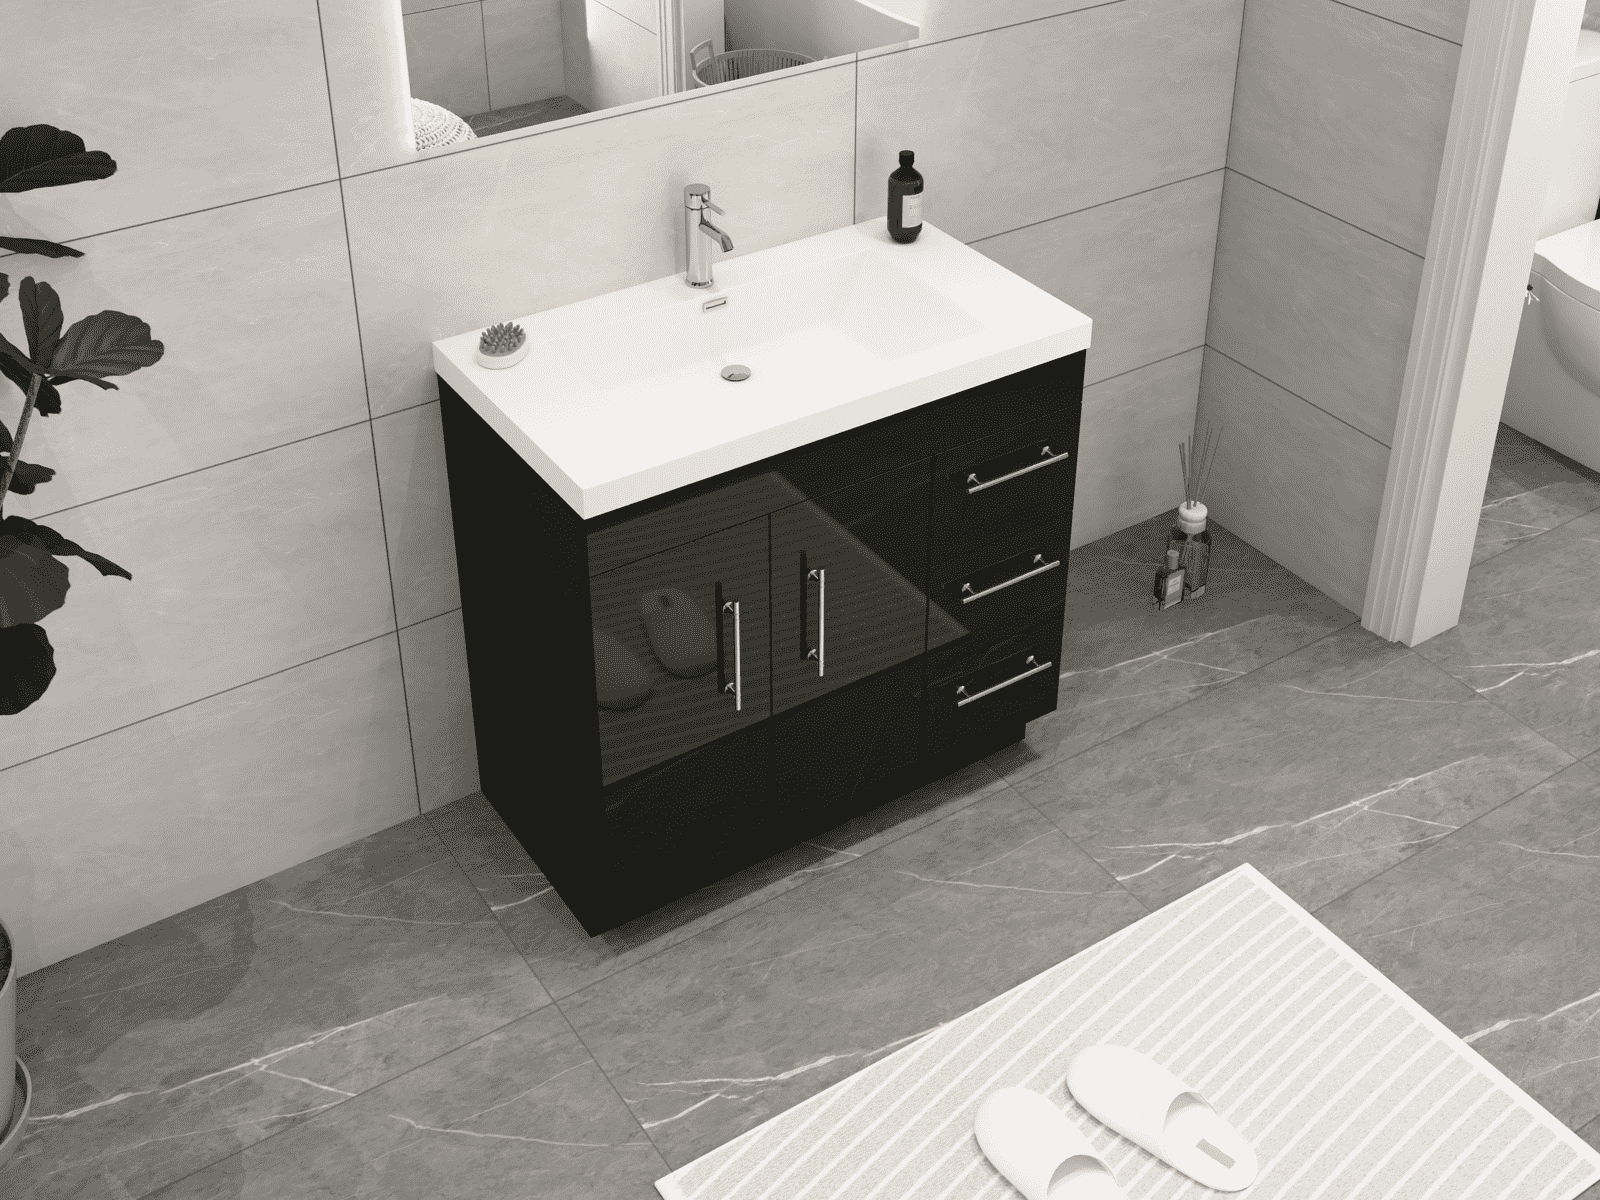 Elsa 36" Freestanding Bathroom Vanity with Reinforced Acrylic Sink in Gloss Black | Better Vanity